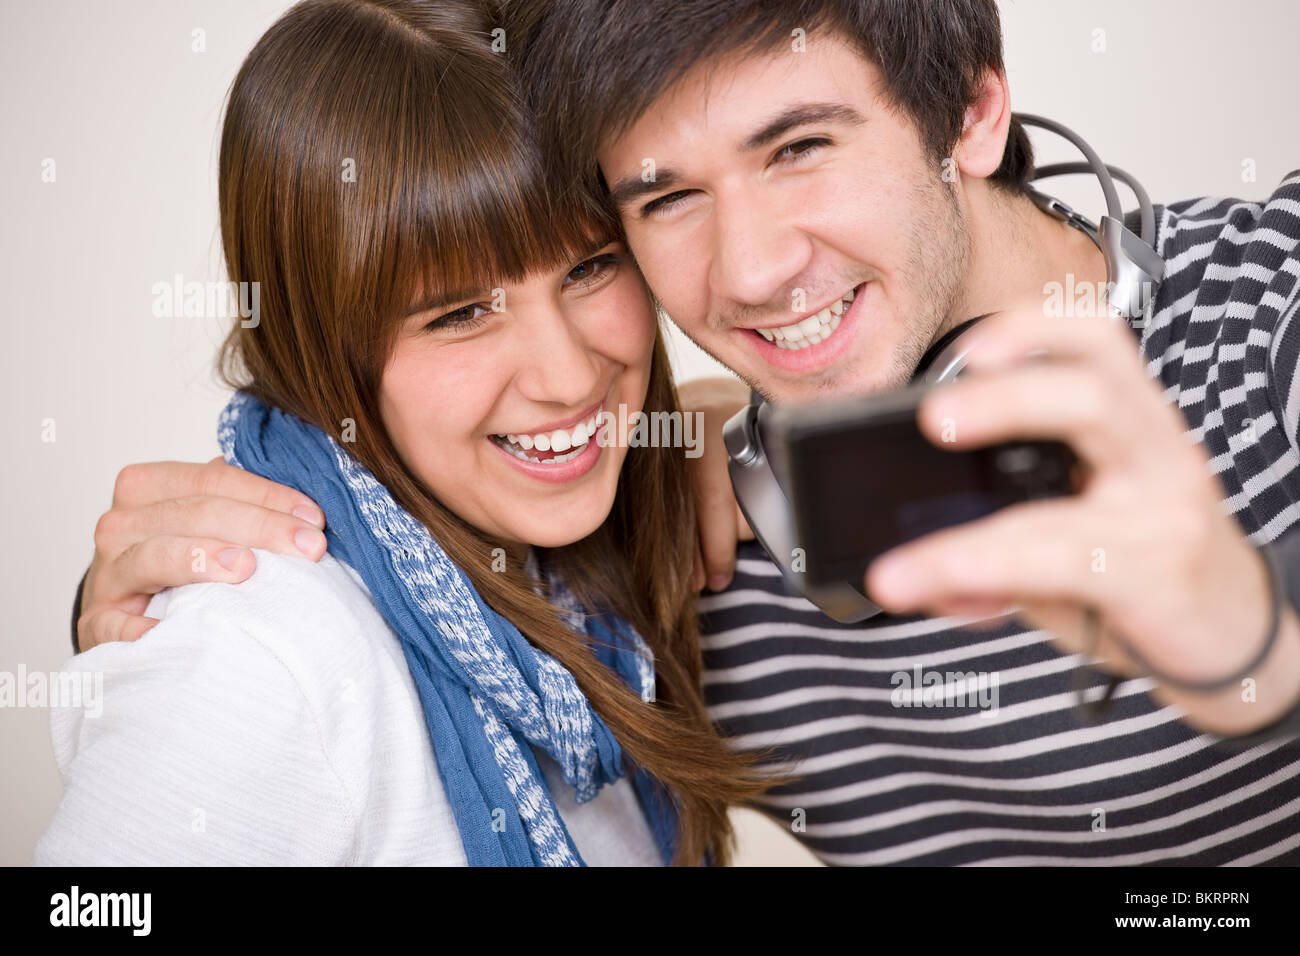 Étudiants - happy smiling woman taking photo avec l'appareil photo Banque D'Images